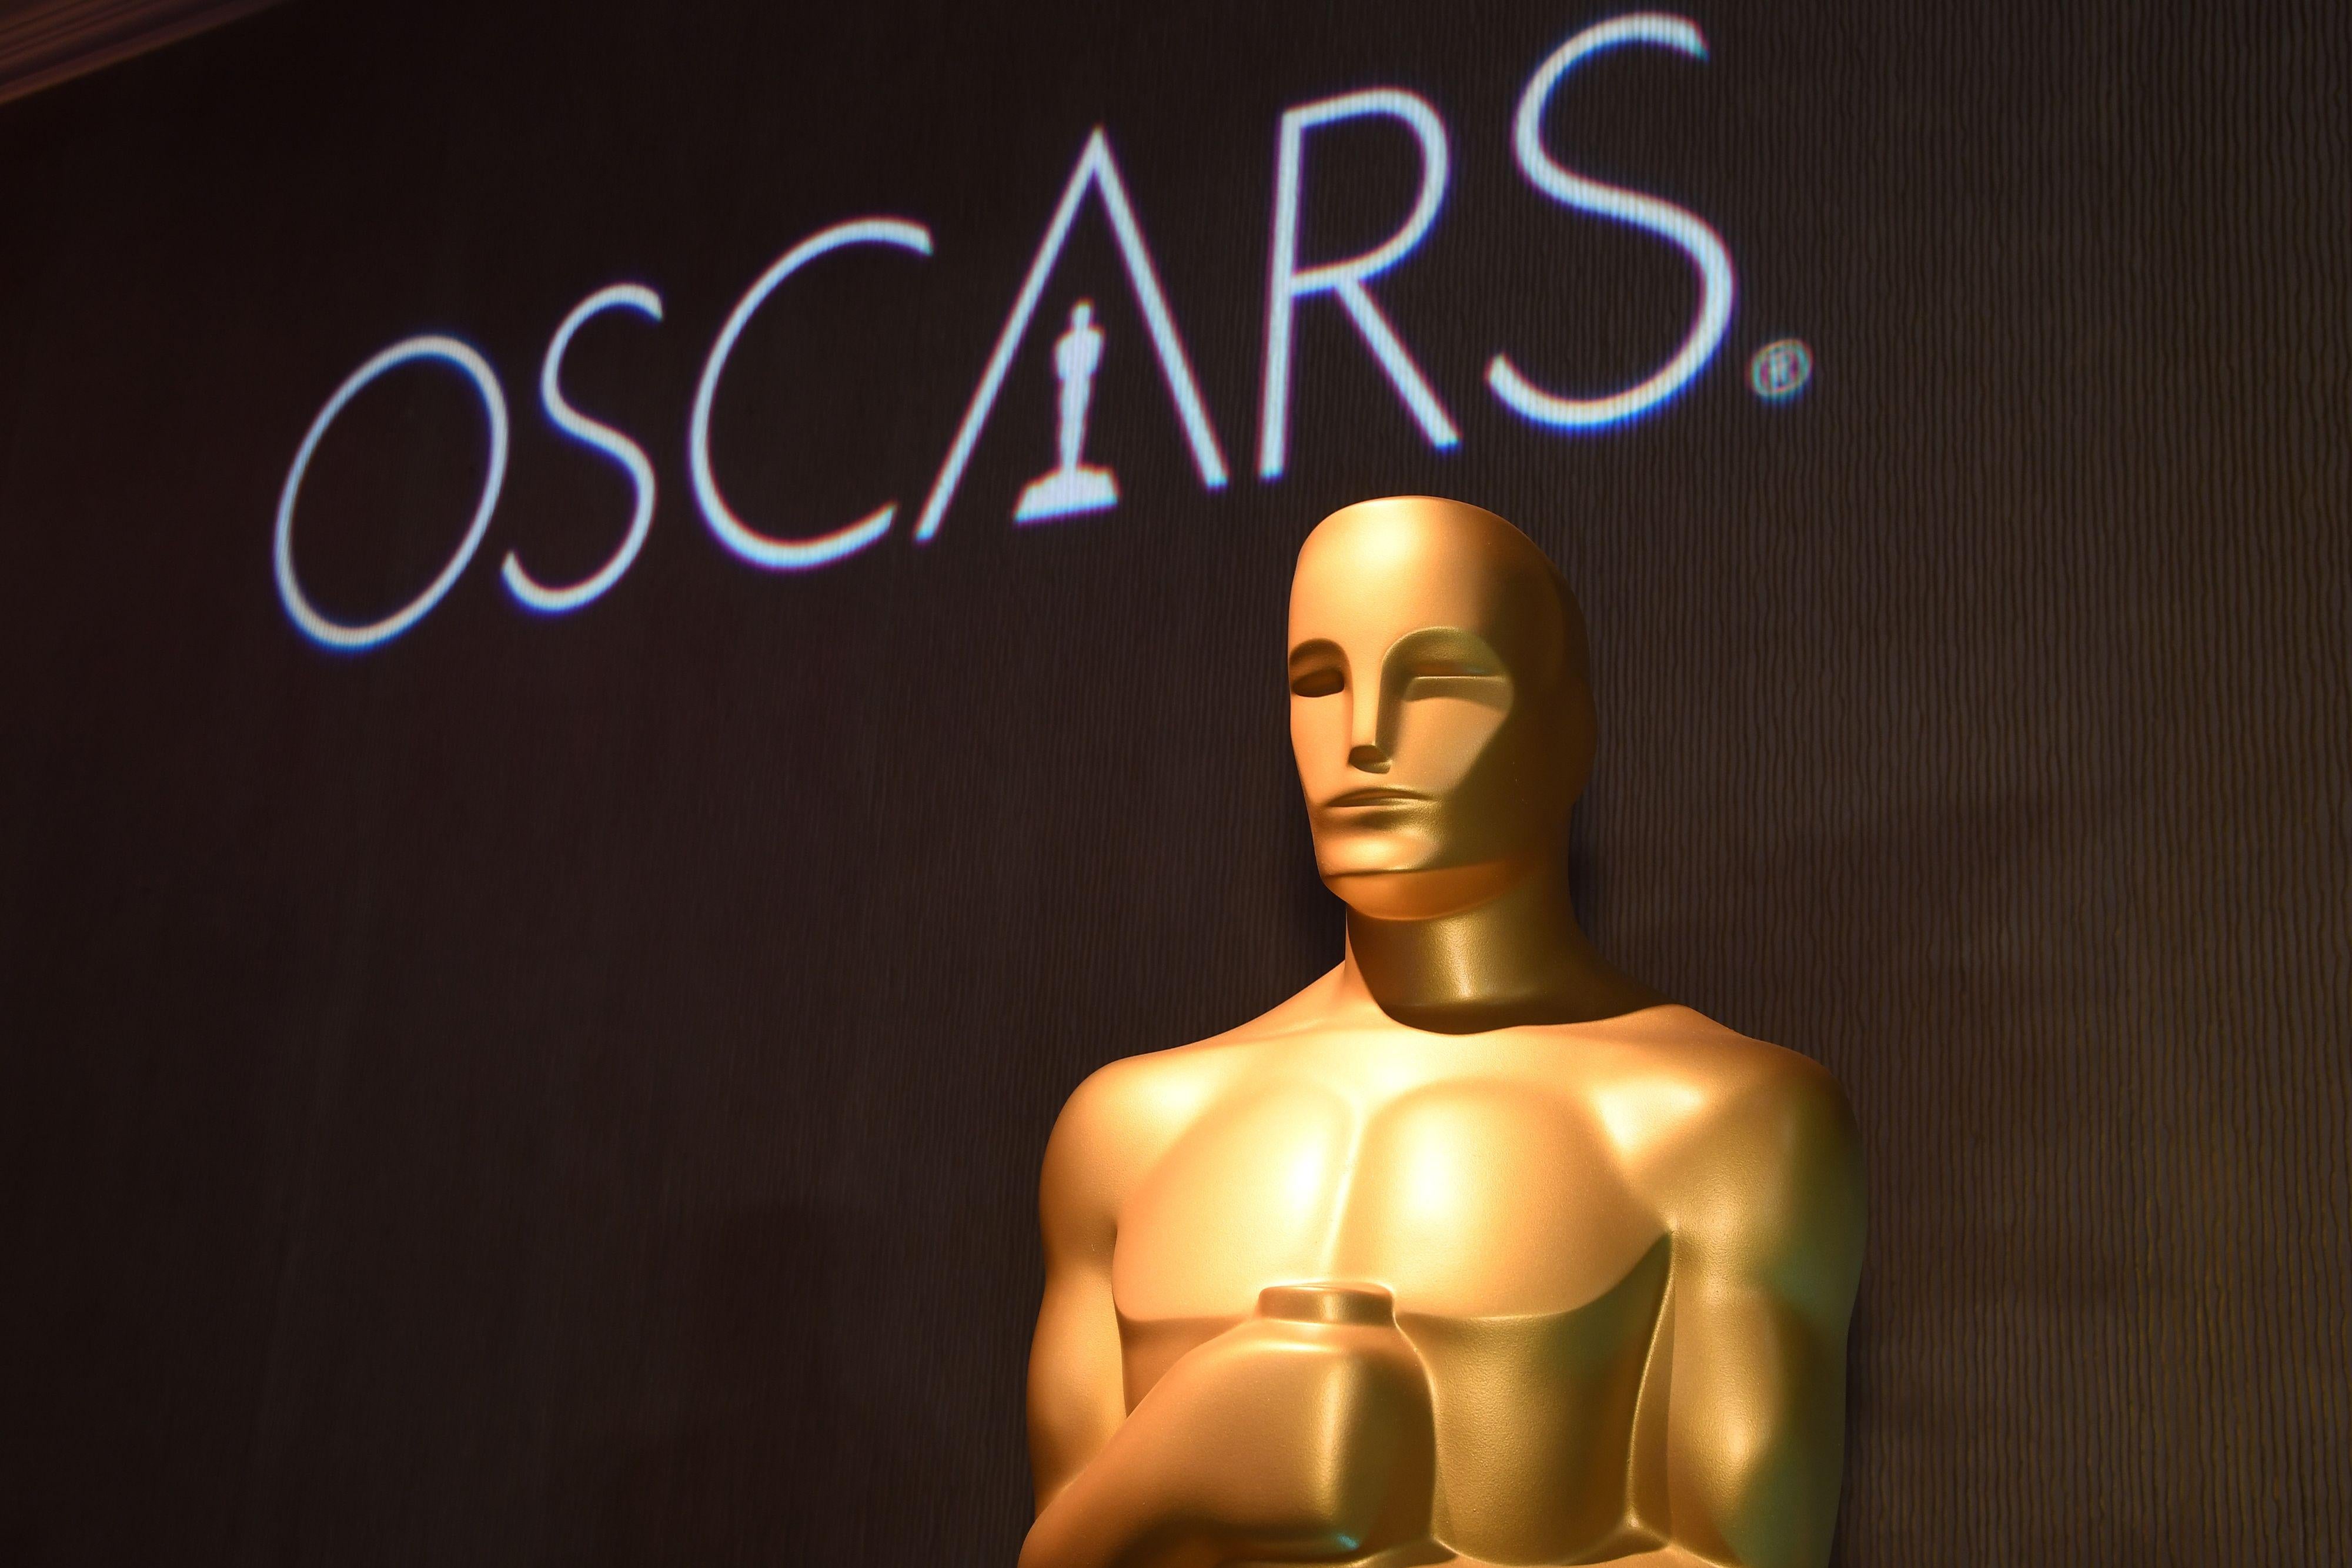 A giant Oscar statue.